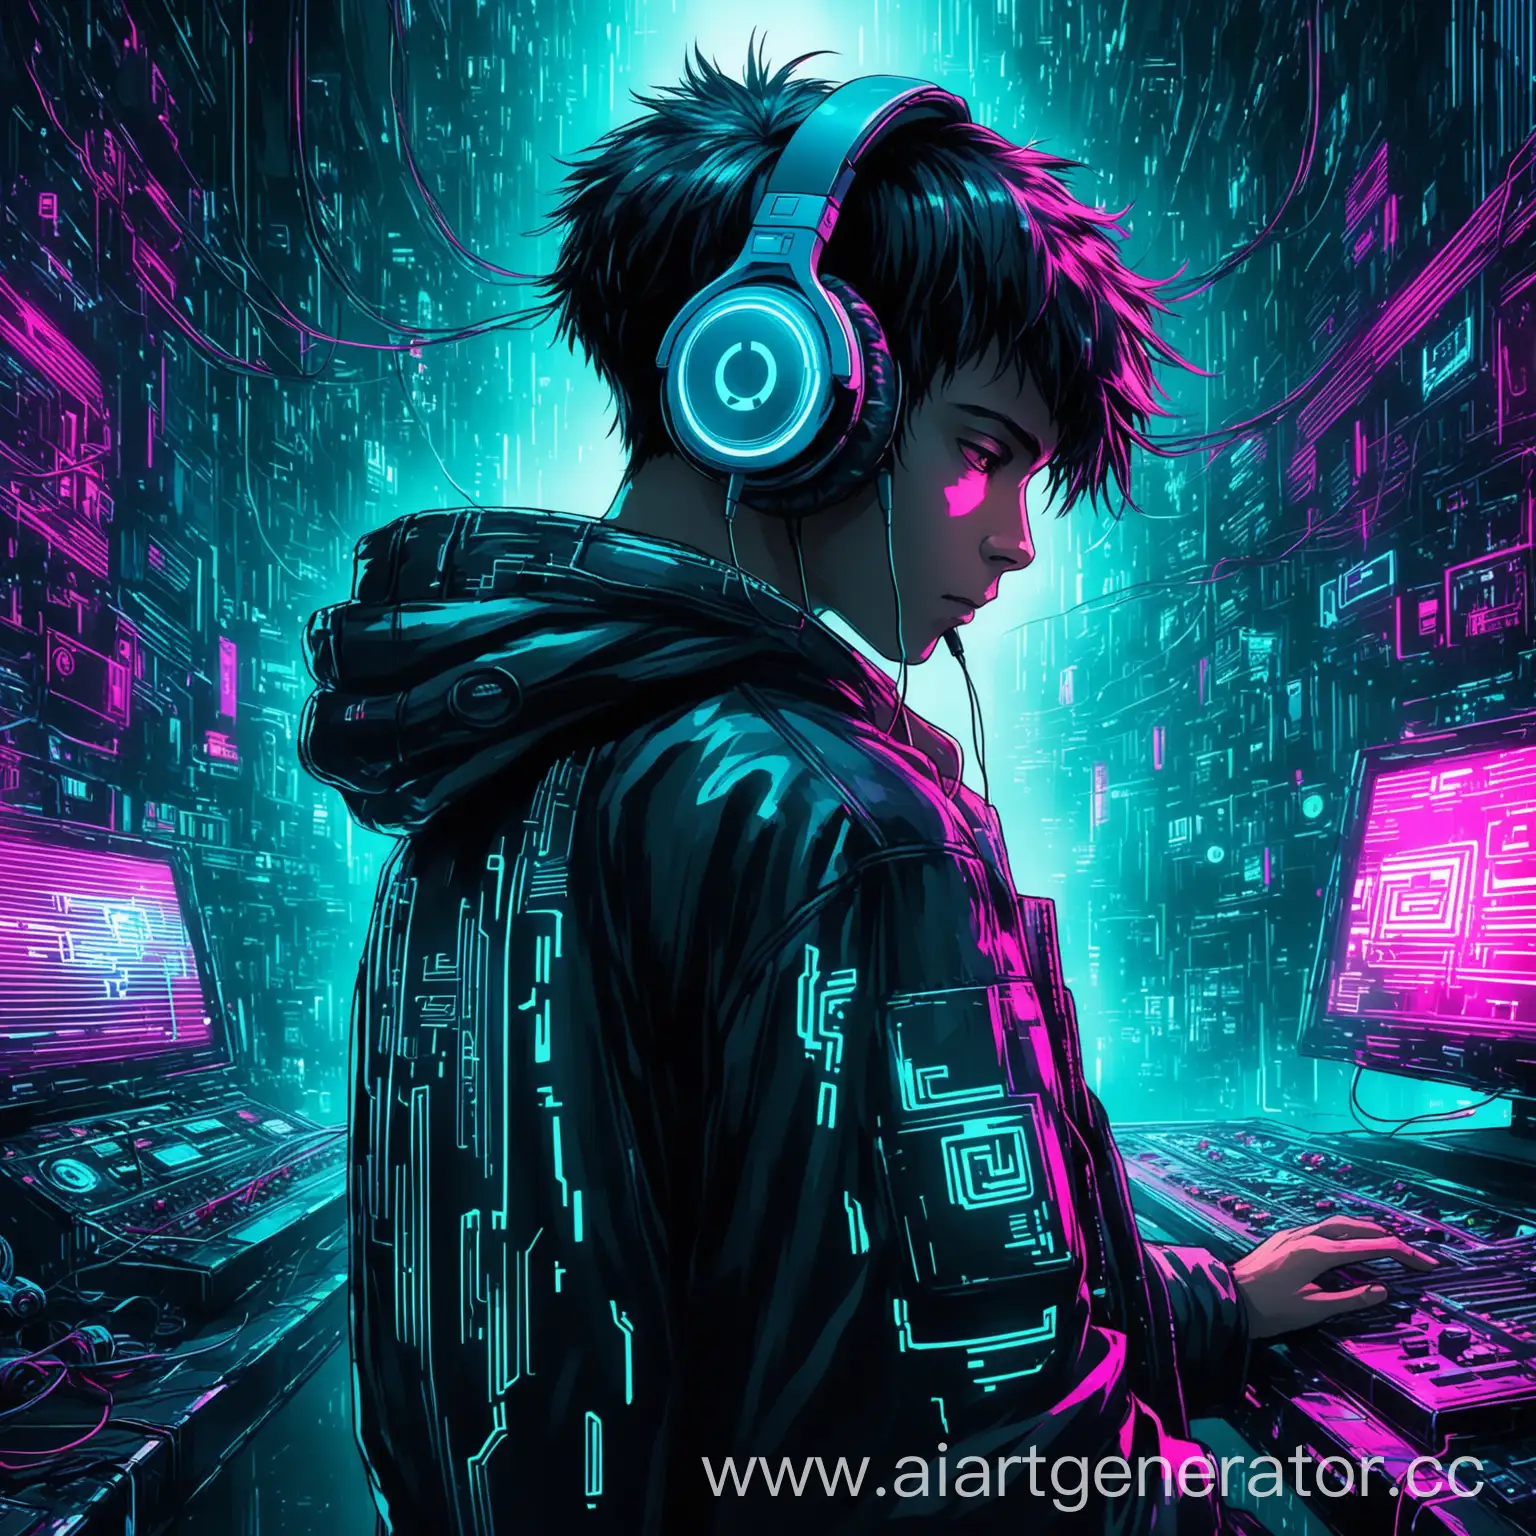 Boy-Immersed-in-Music-in-Cyberpunk-Style